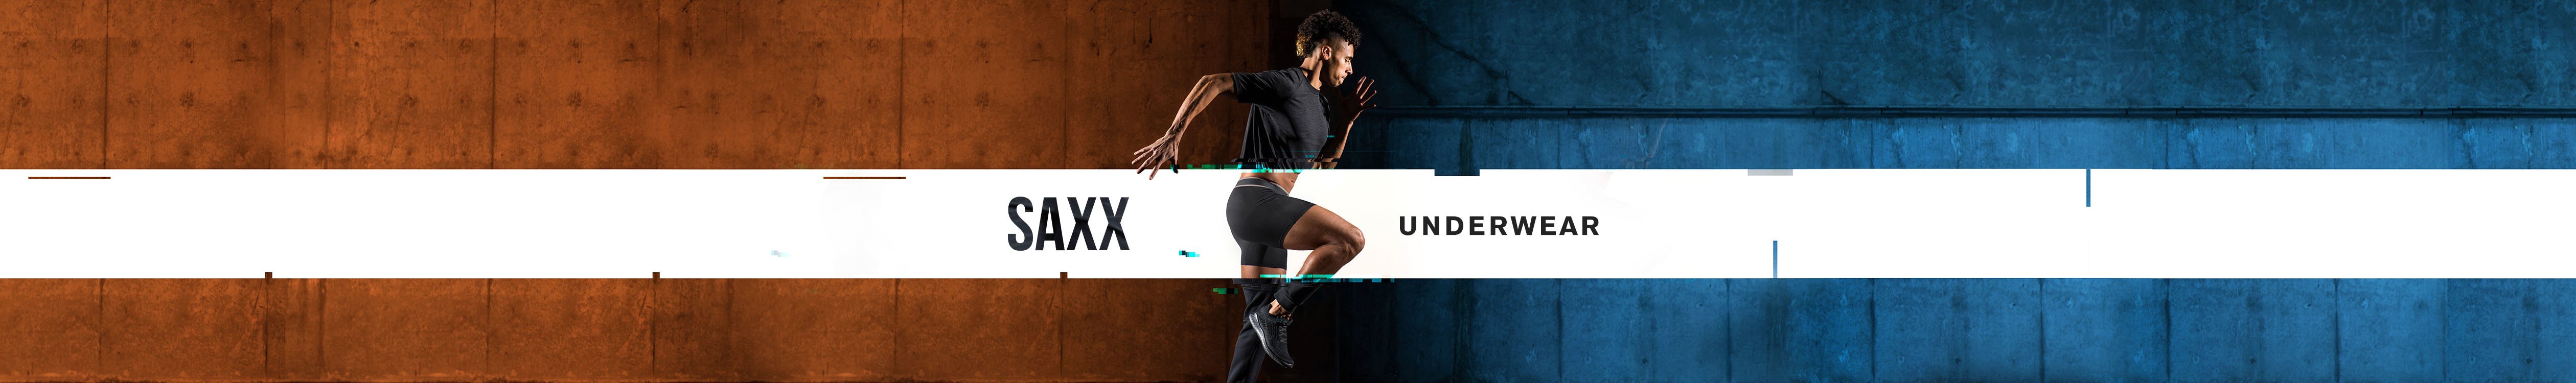 SAXX Brand Page: Man wearing SAXX underwear